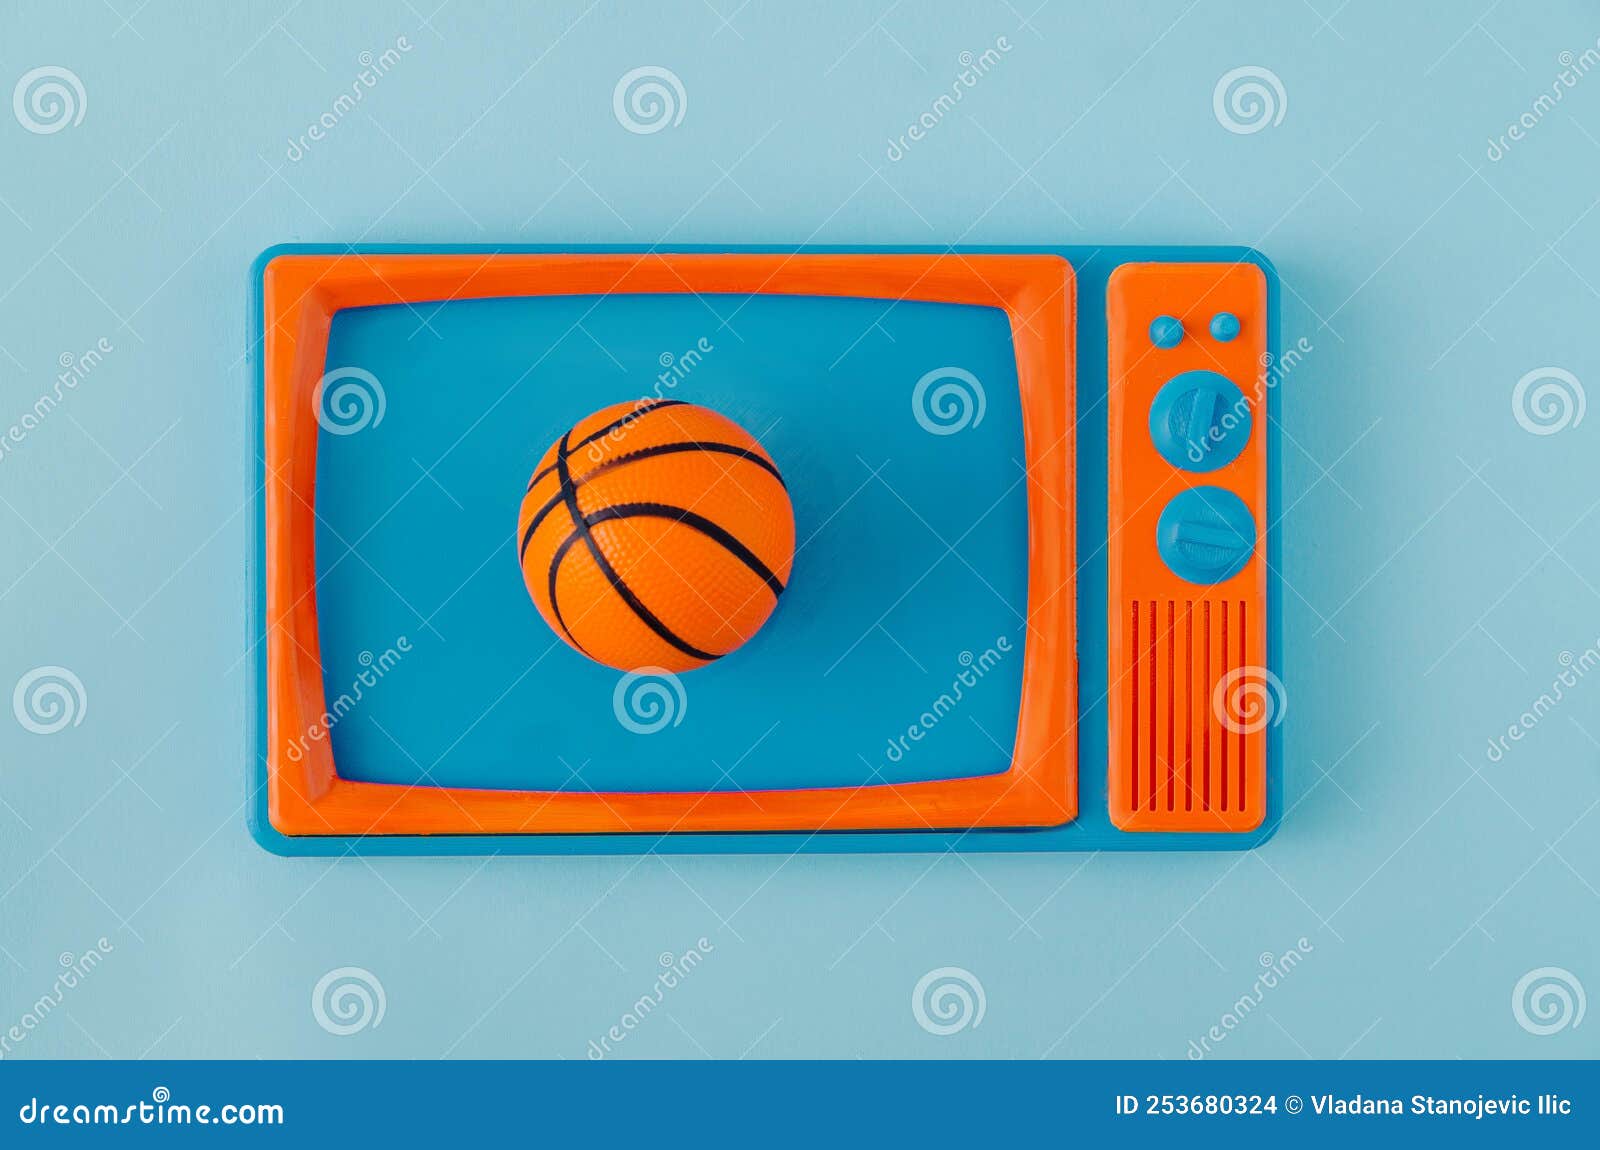 149 Television Screen Basketball Stock Photos